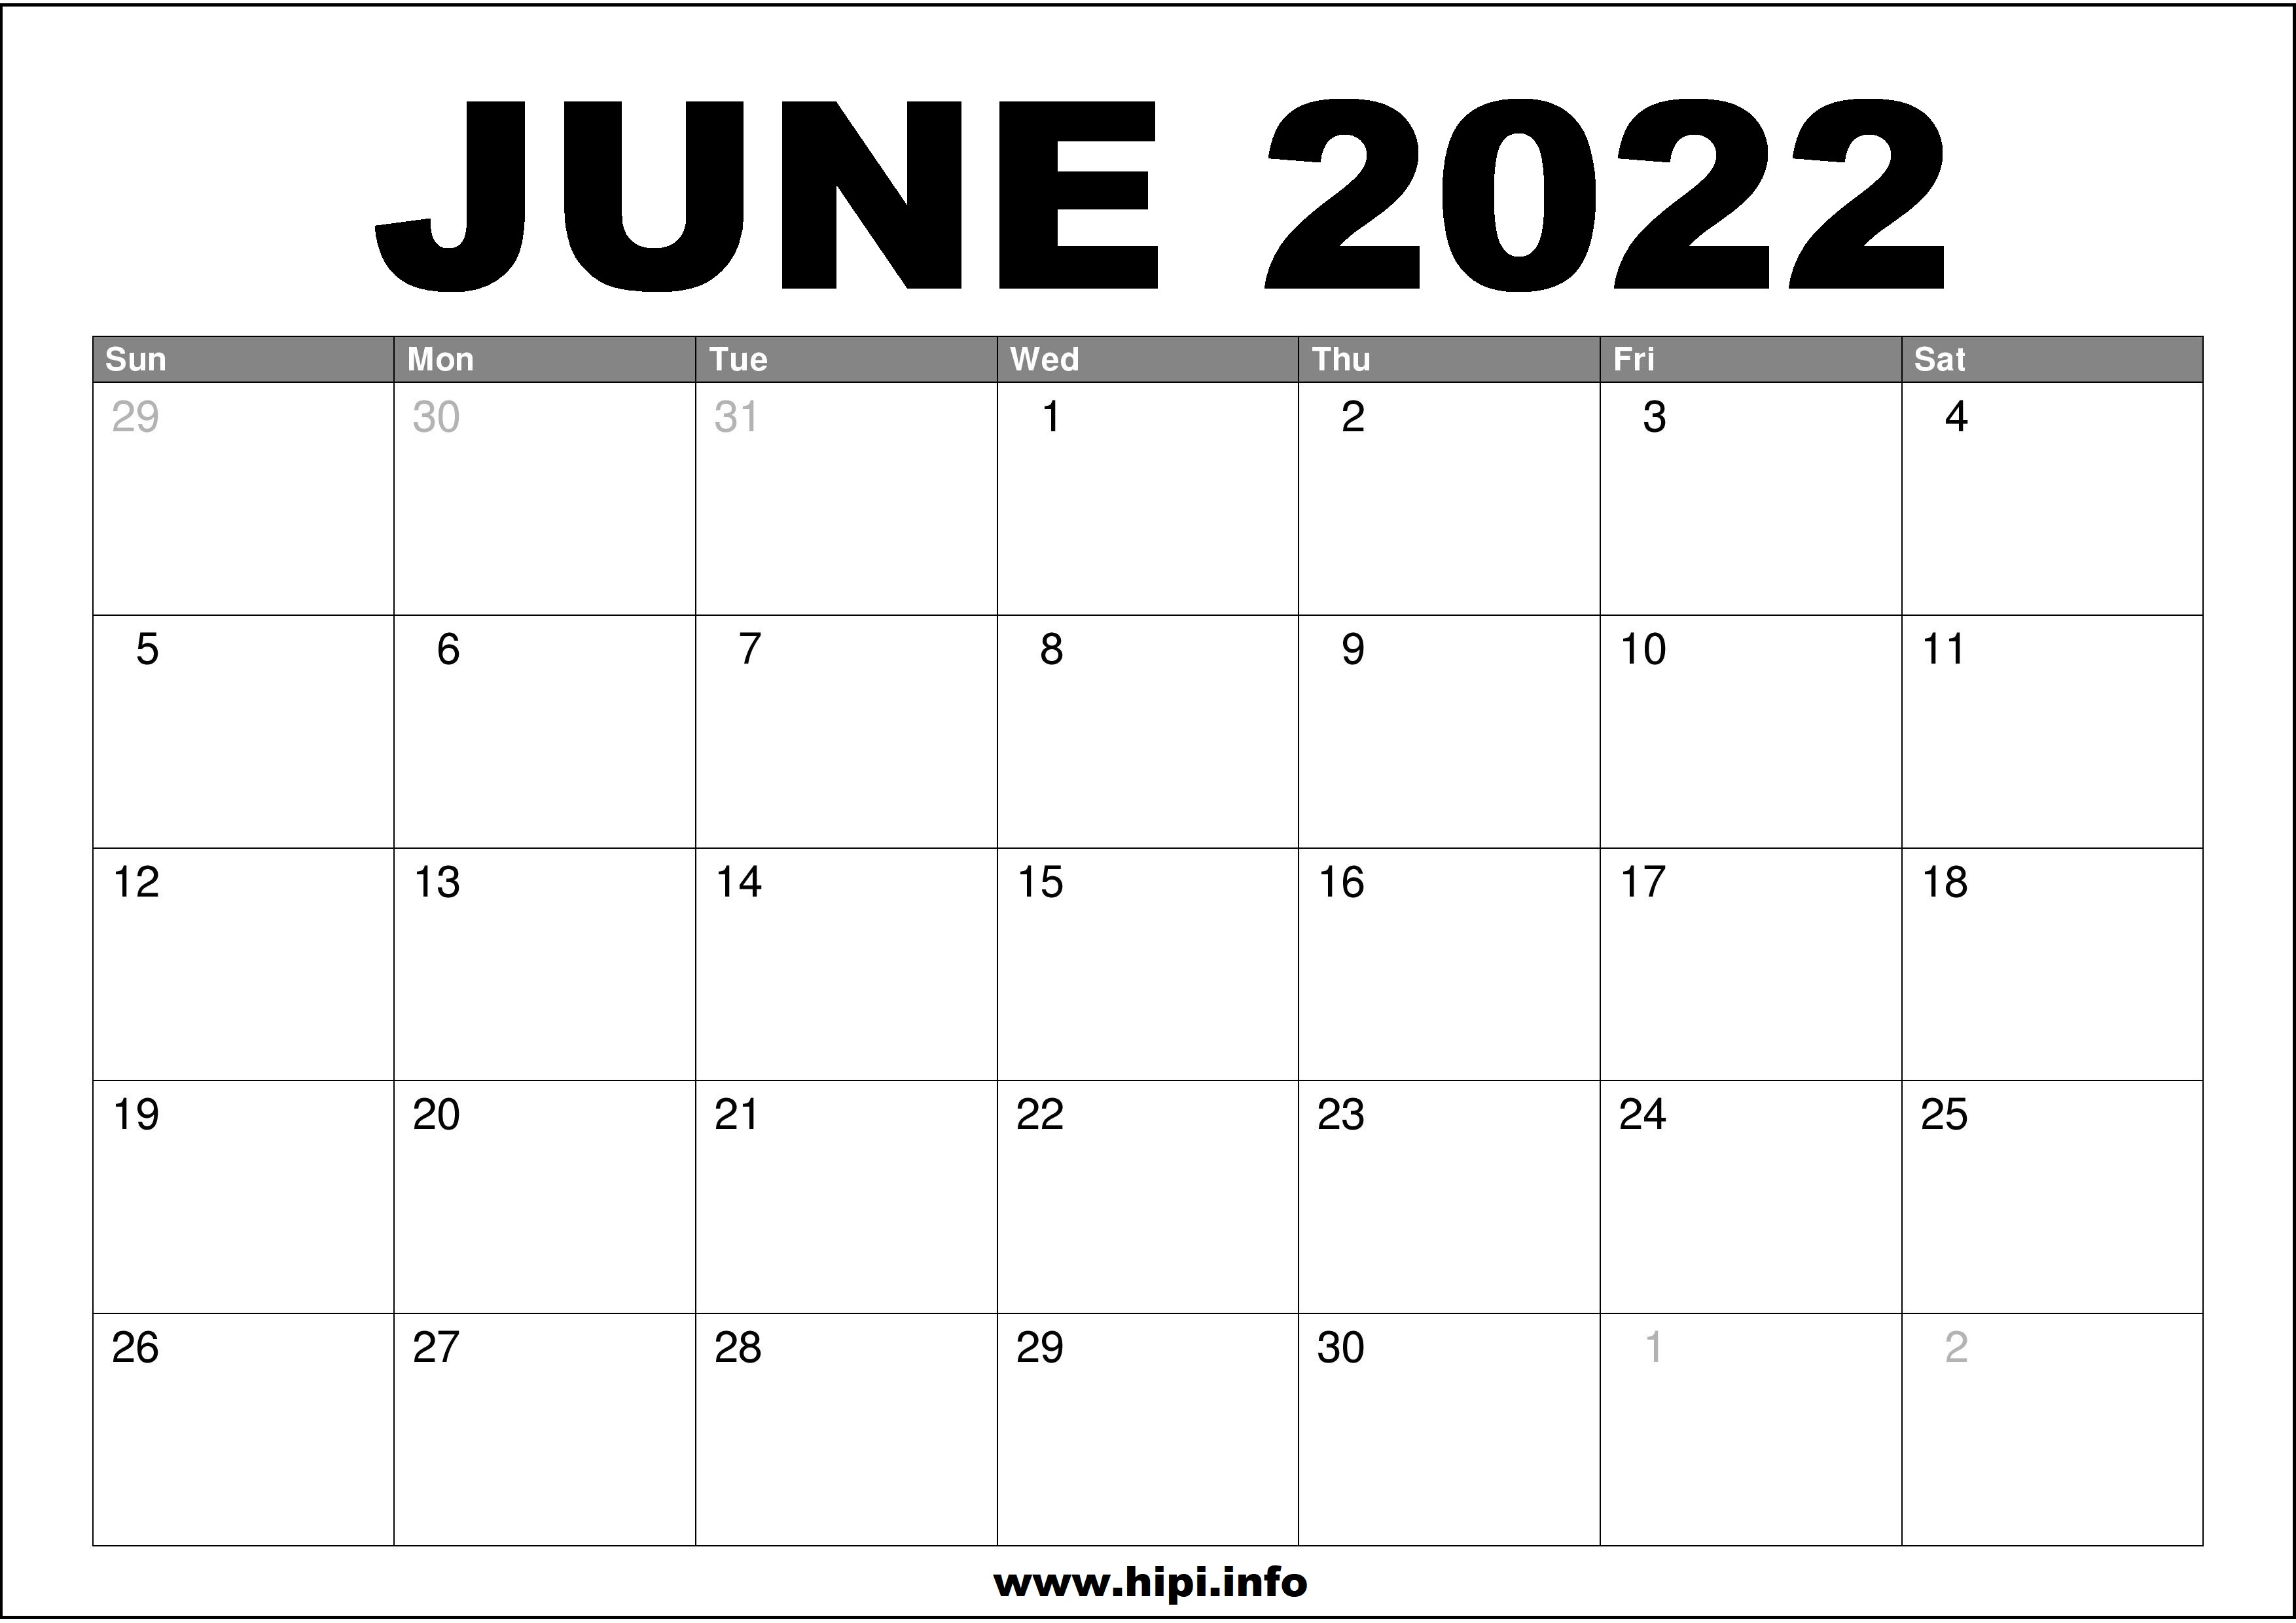 Month Of June Calendar 2022 June 2022 Calendar Printable Free - Hipi.info | Calendars Printable Free